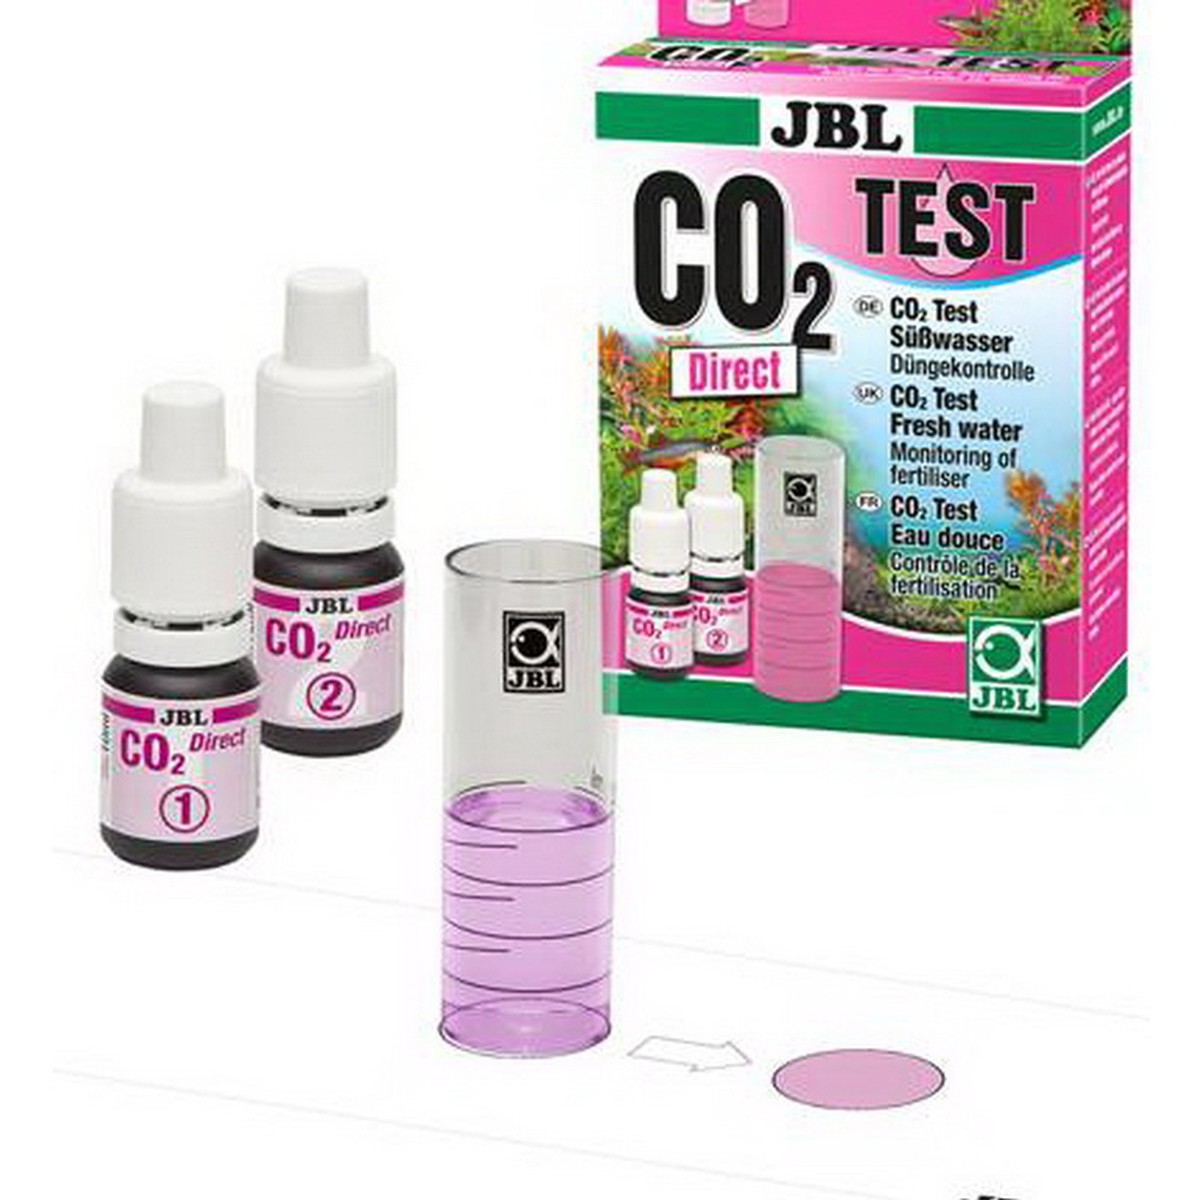   JBL CO2 Direct Test-Set  